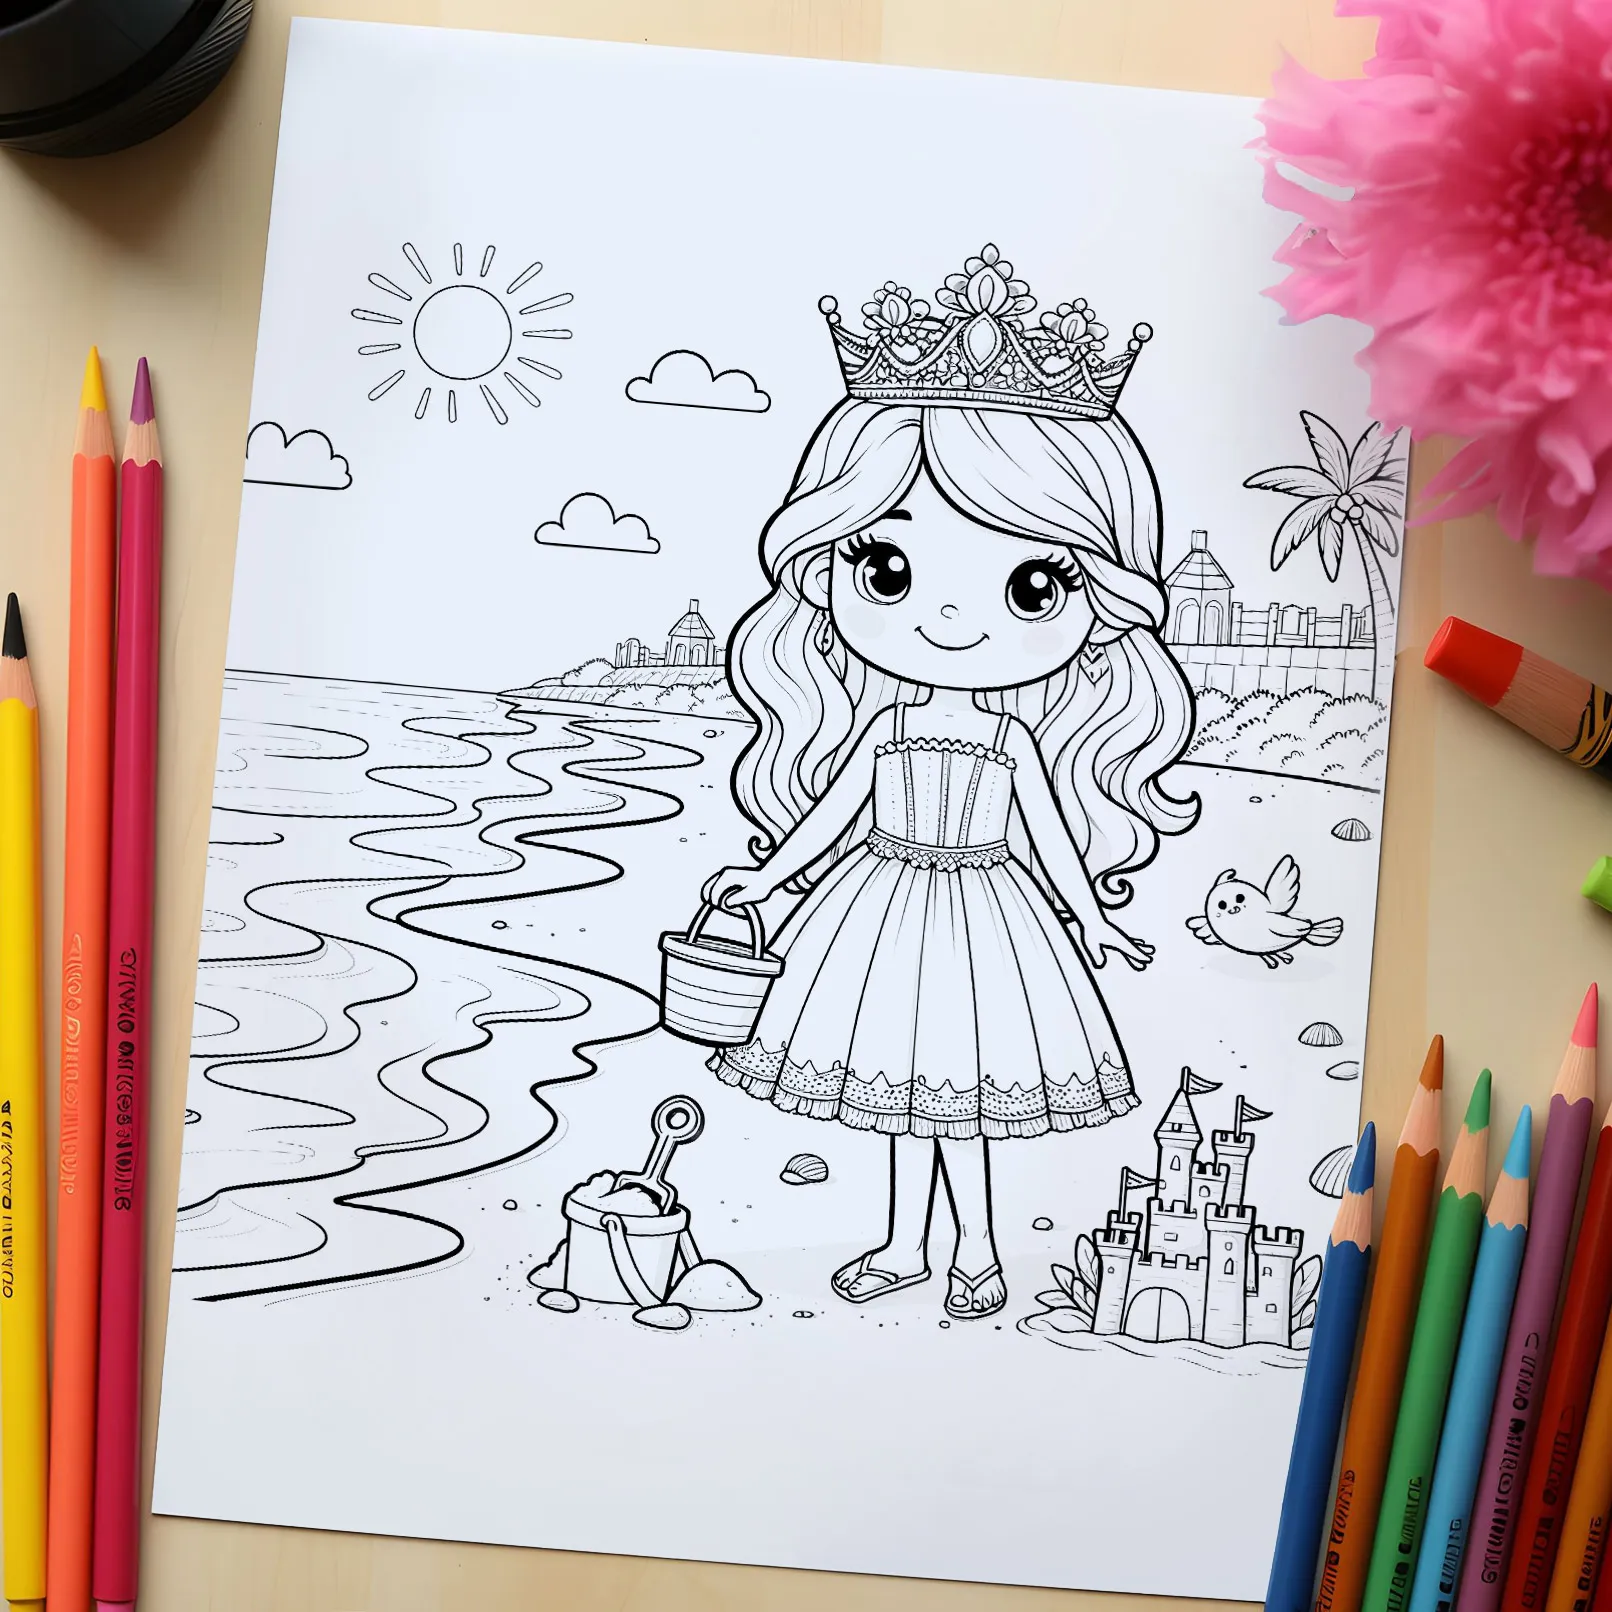 Boyama sayfaları, prenseslerle yazdırılmak üzere çizilebilir renklendirme sayfaları.